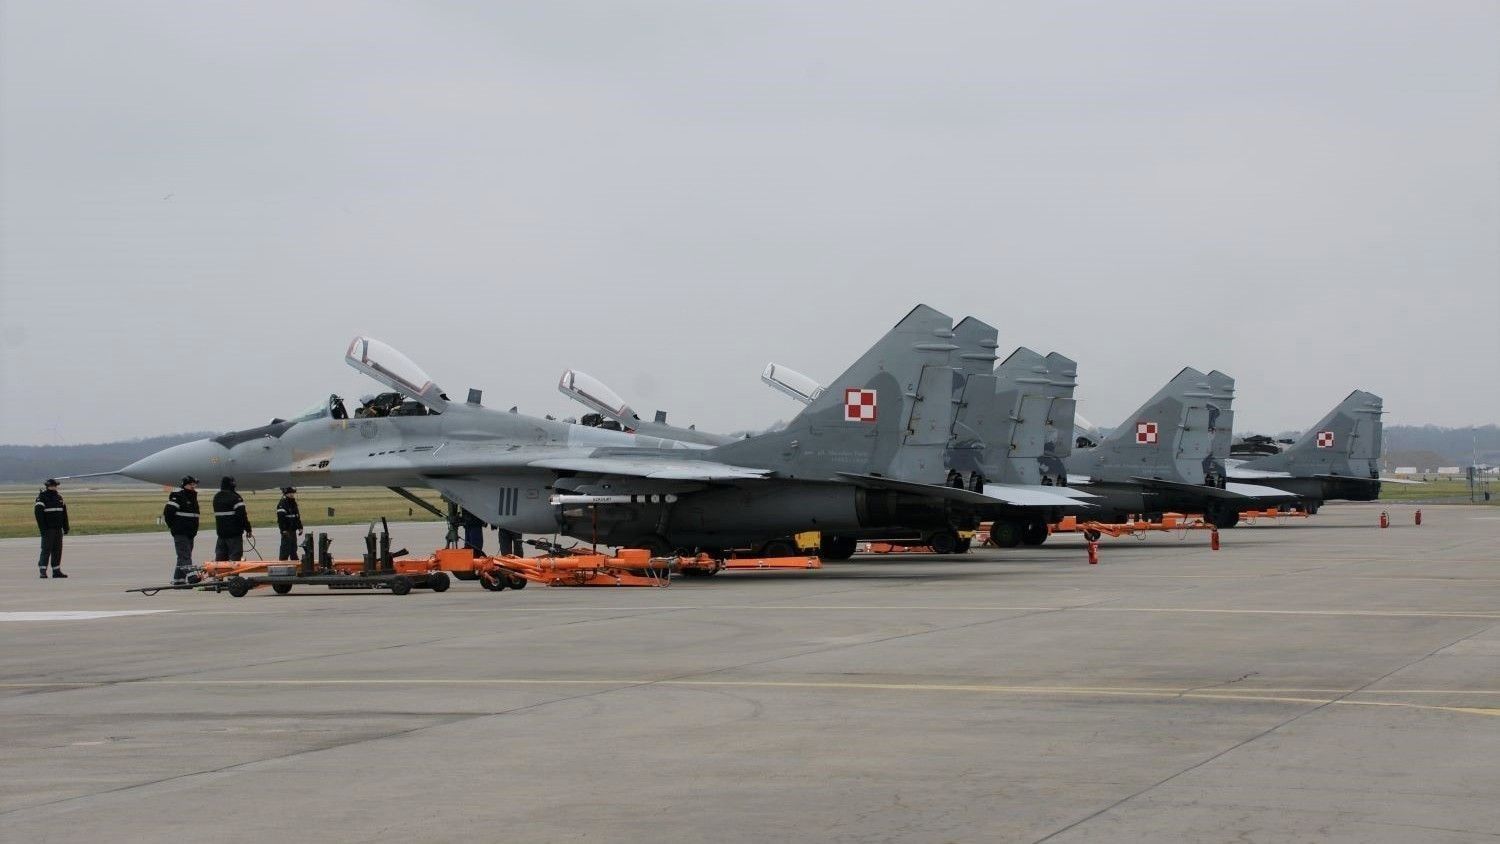 Polish President Announces Next Polish MiG-29 going to Ukraine ...